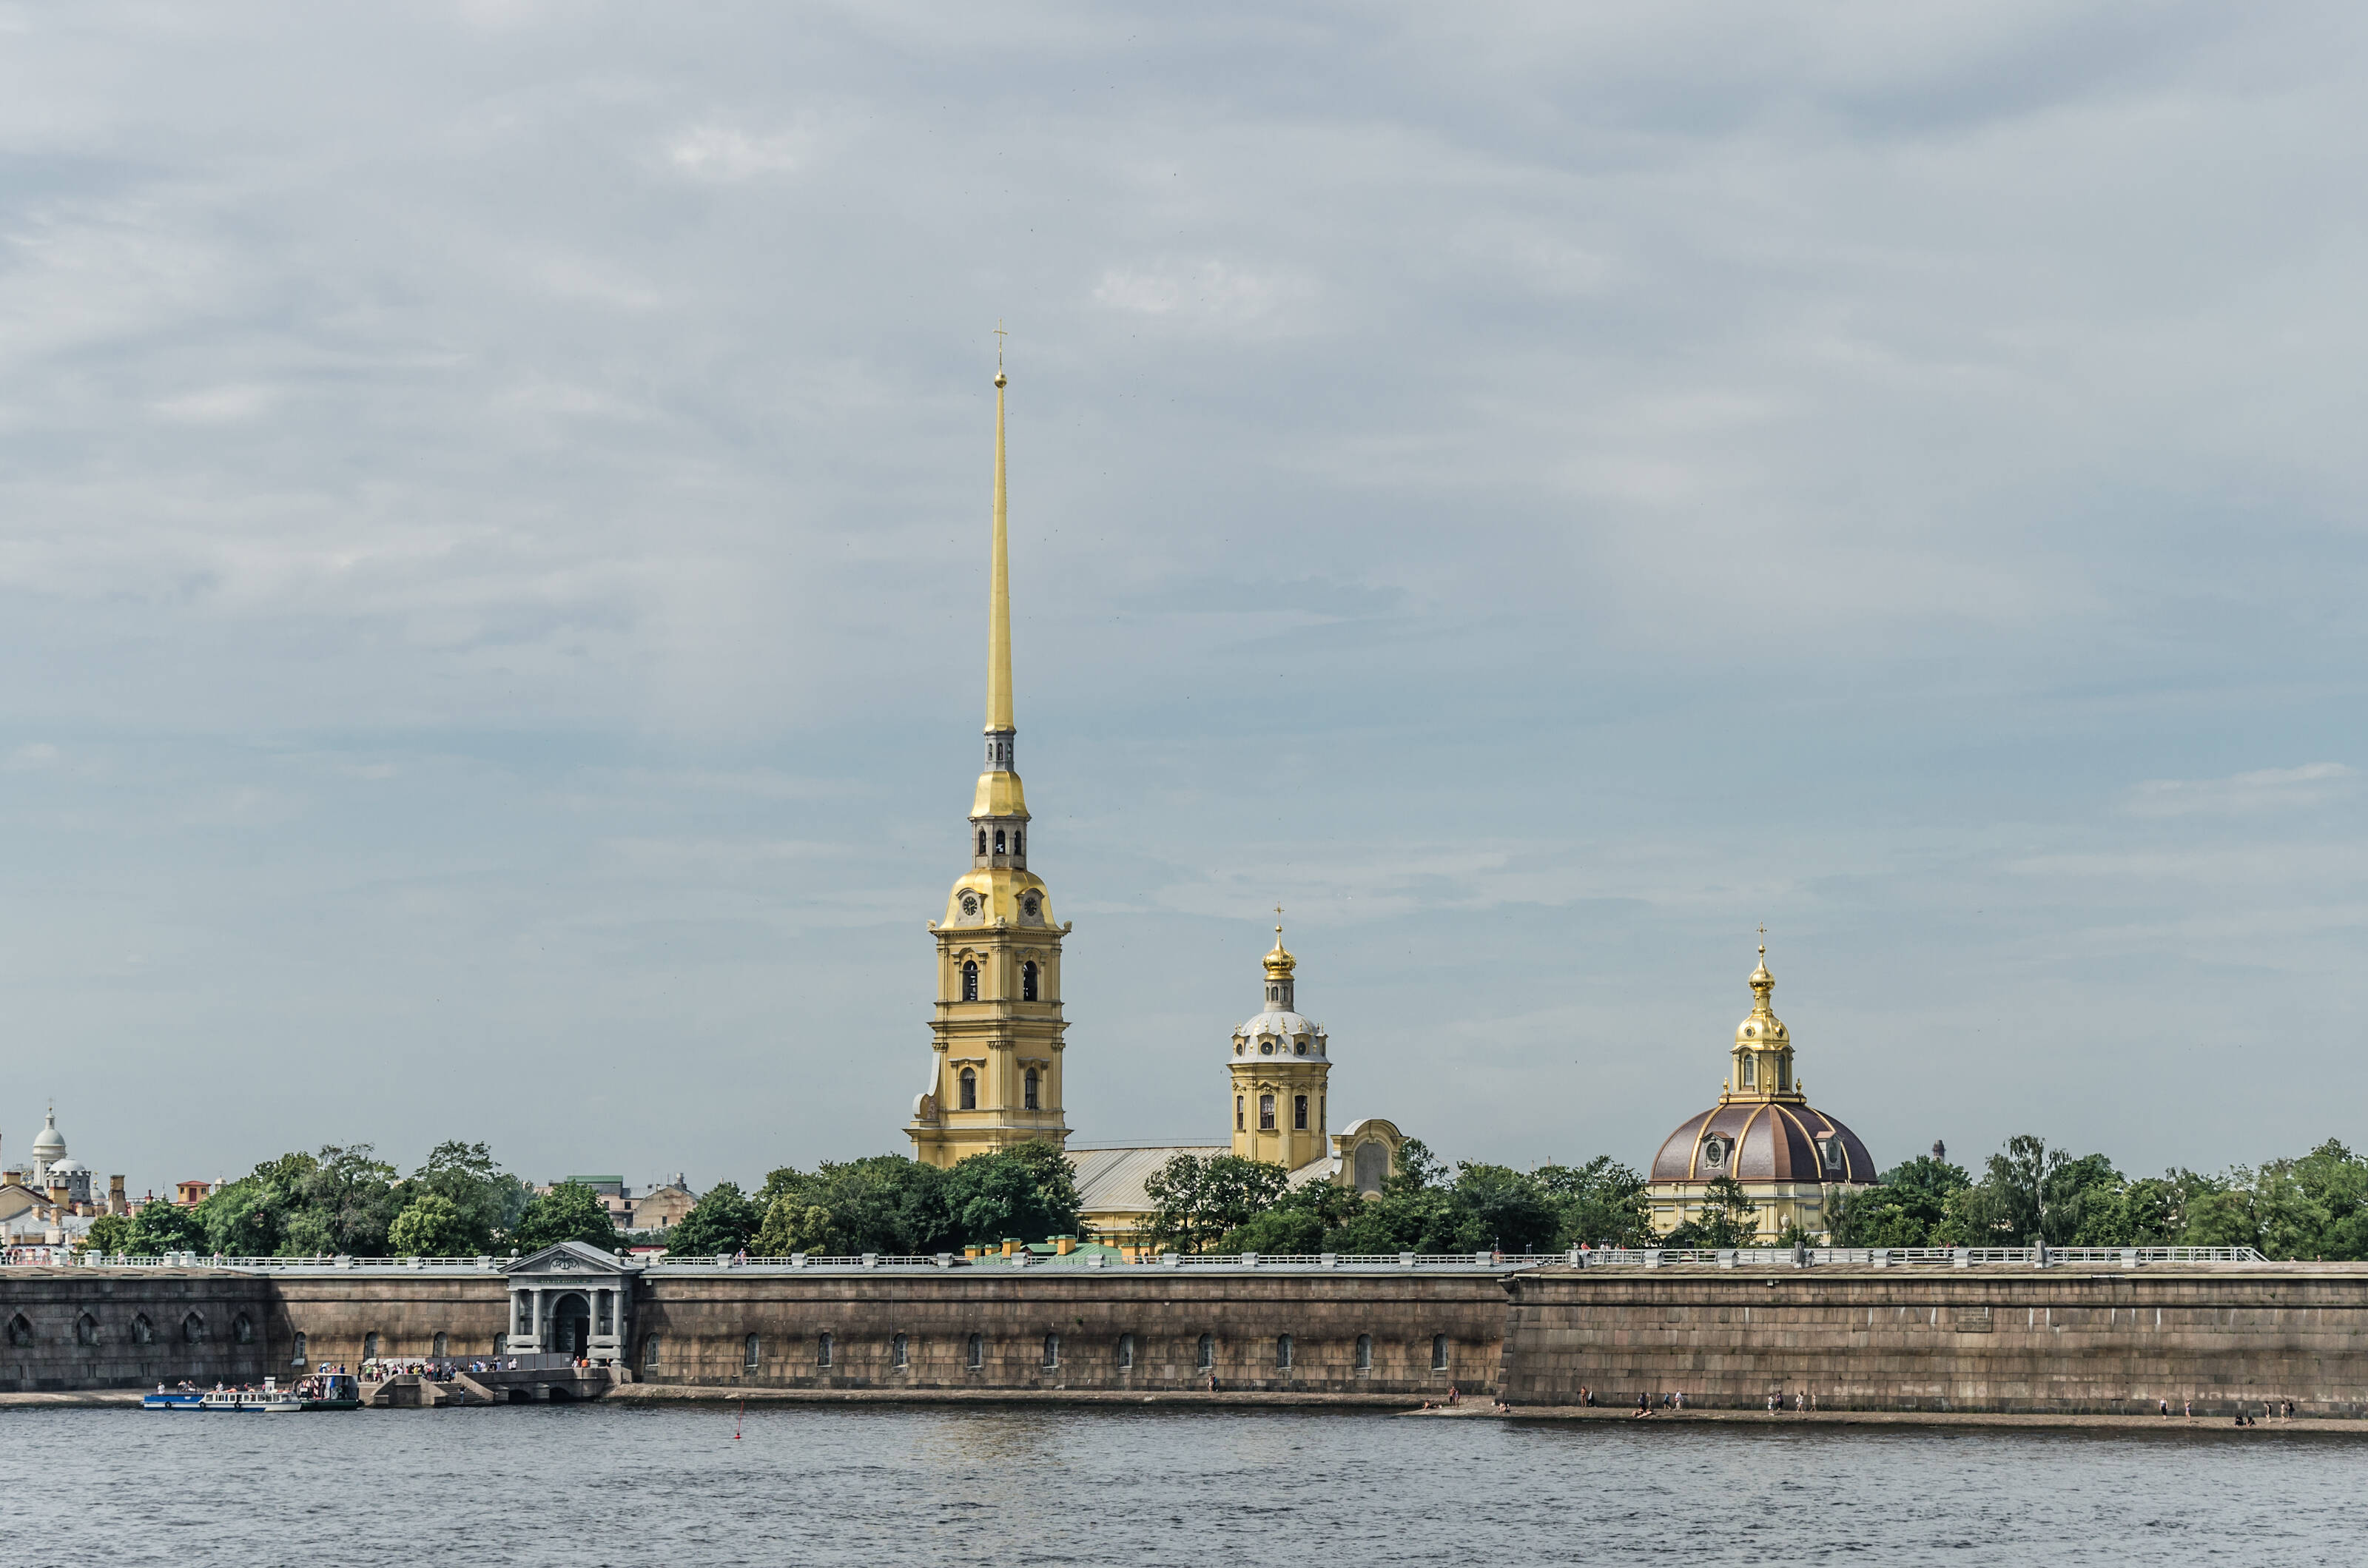 Петропавловская крепость в Санкт-Петербурге «© Алексей Фёдоров, Wikimedia Commons» (CC BY-SA 4.0)